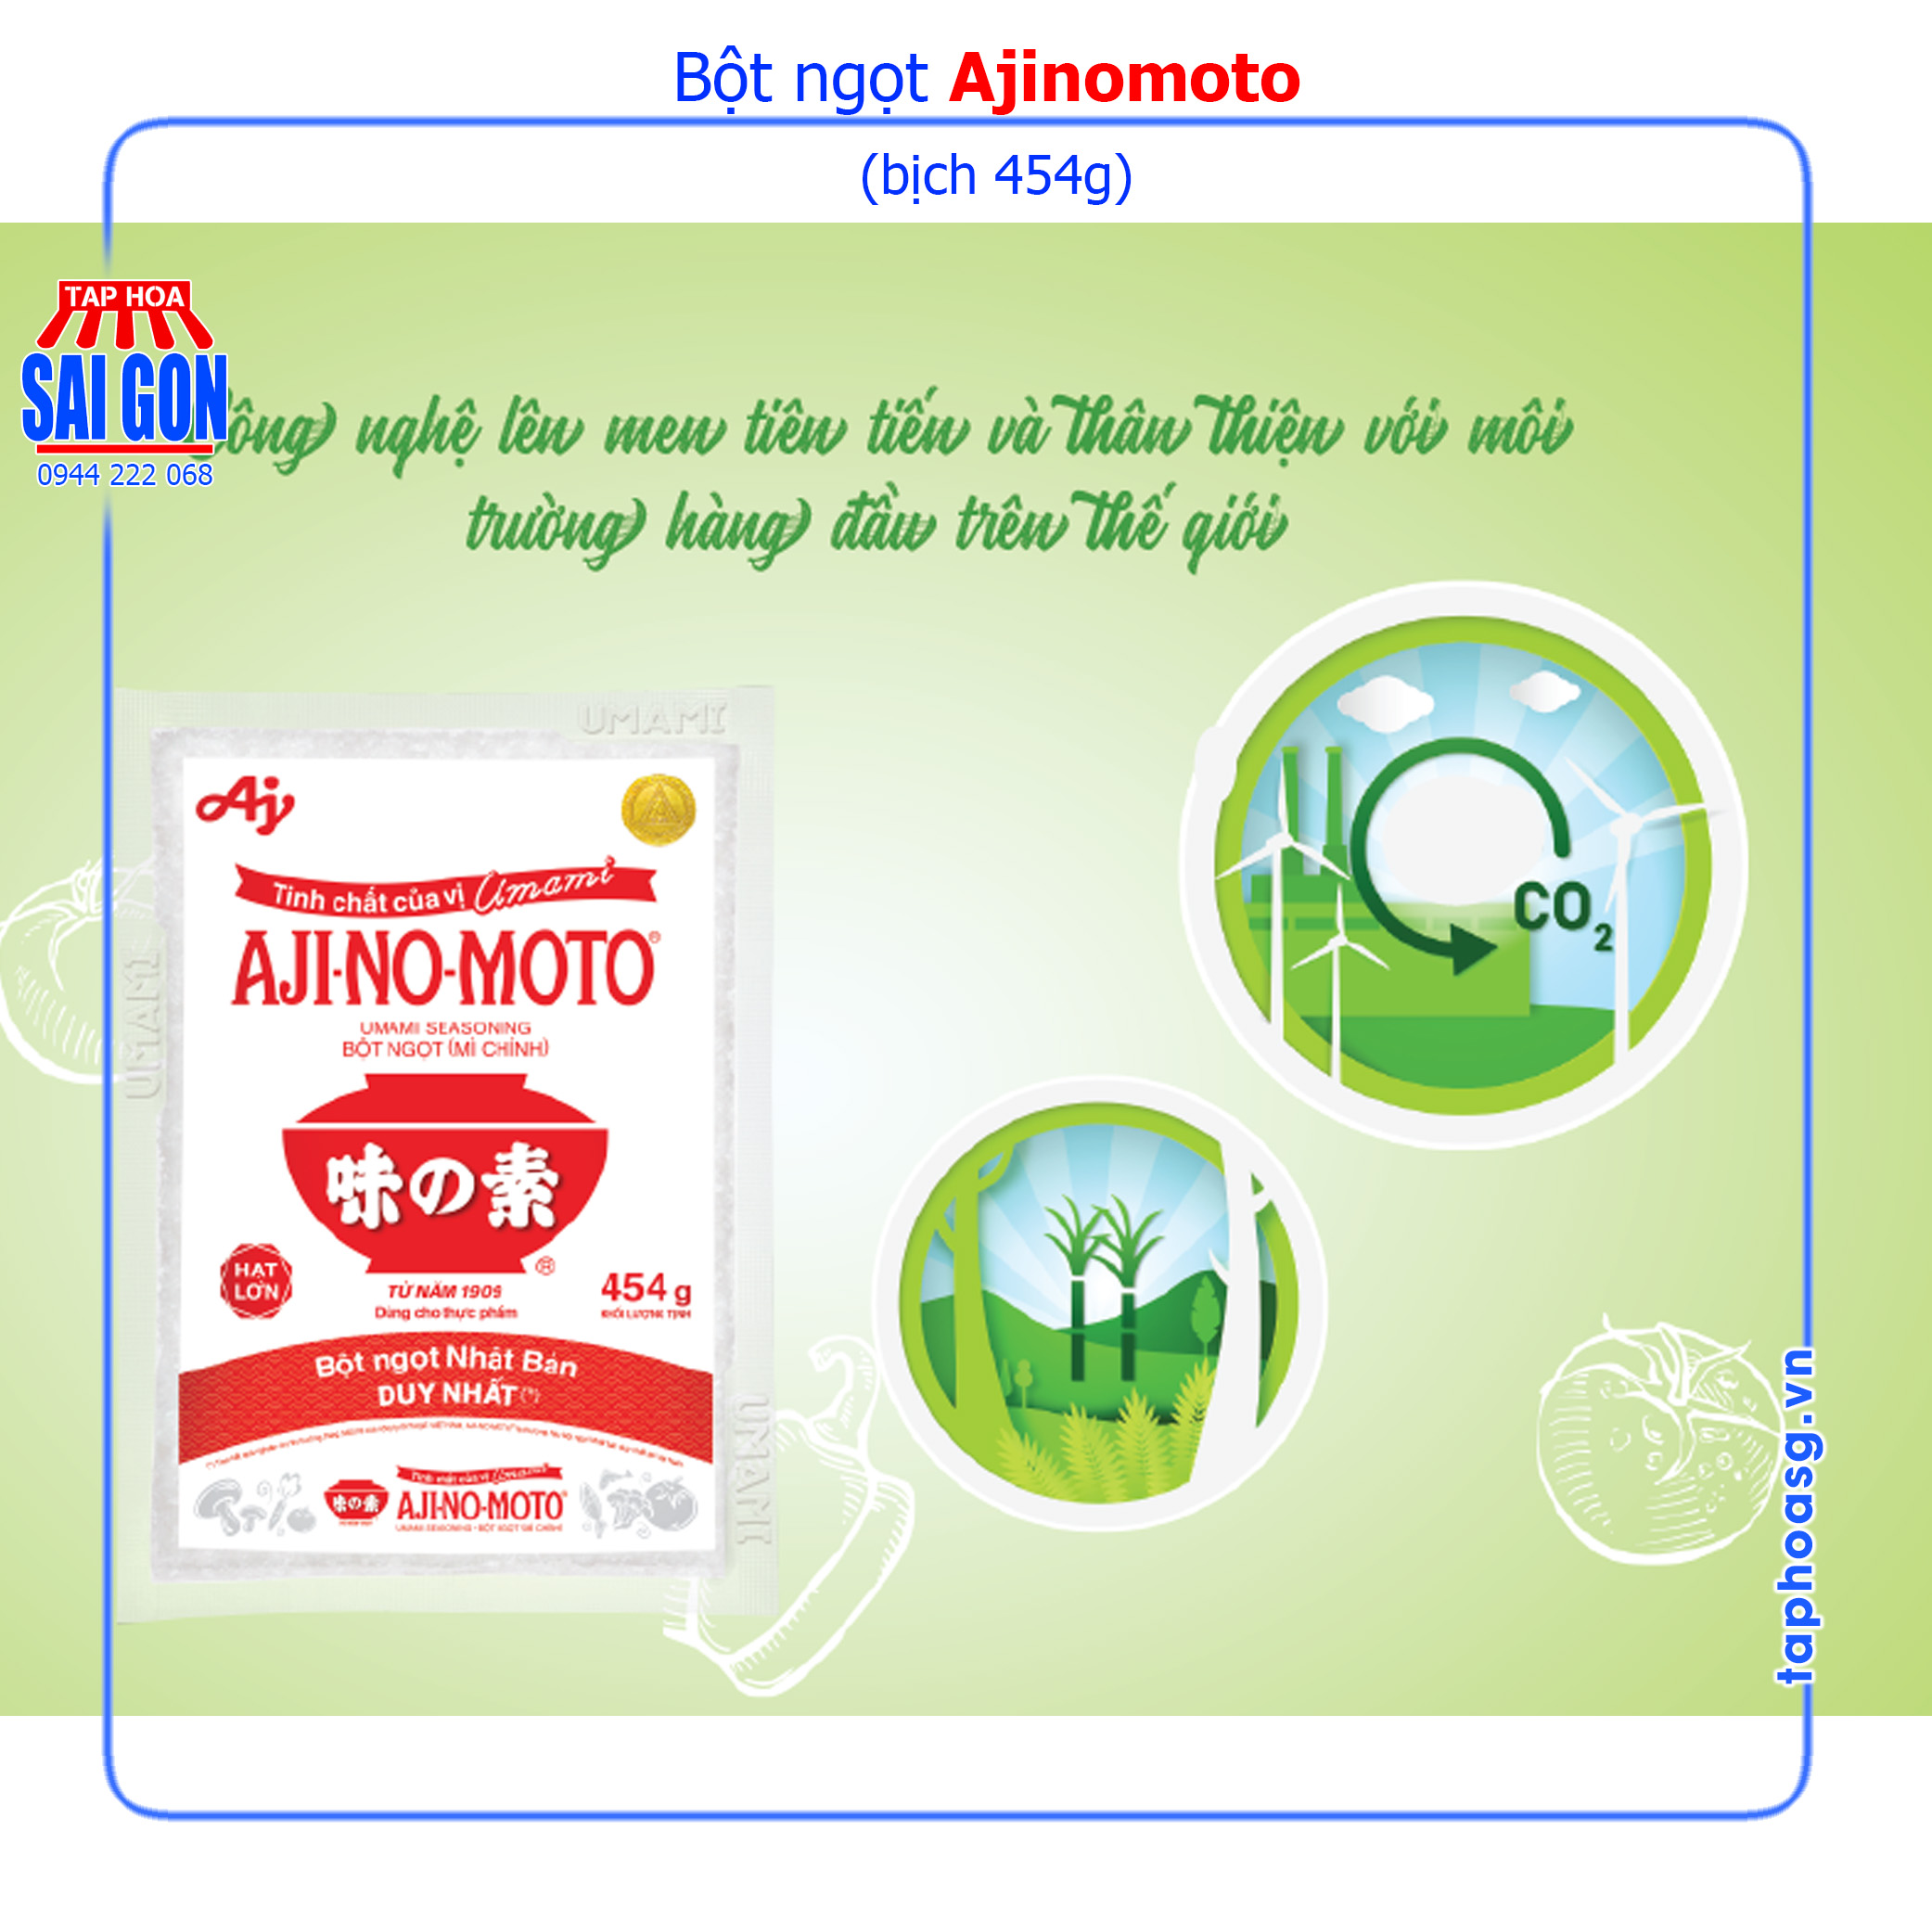 Bột ngọt Ajinomoto bịch 454g giúp món ăn thêm ngon, hấp dẫn và đậm vị